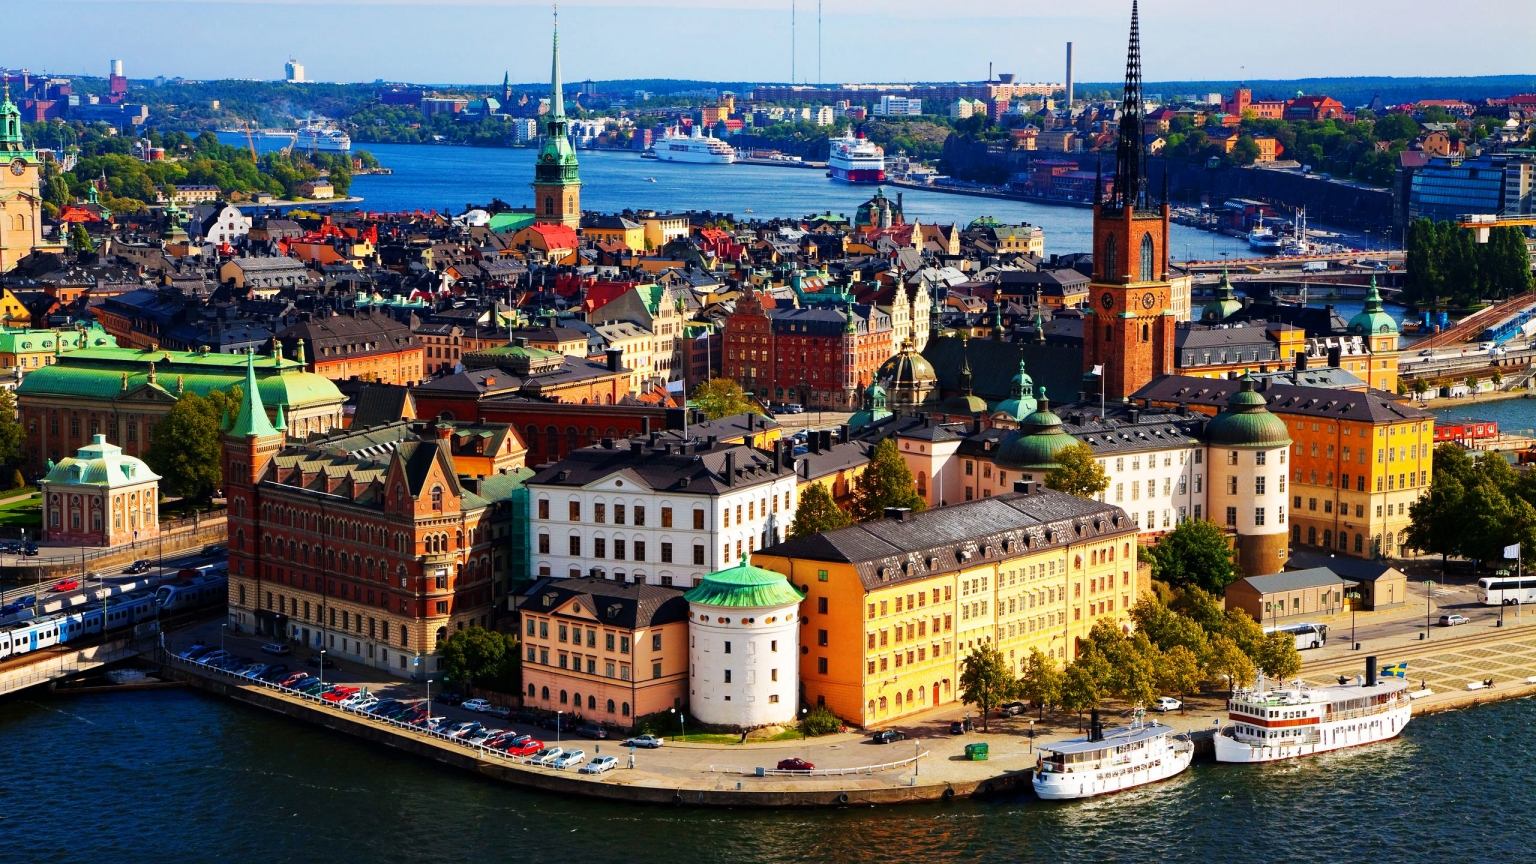 Stockholm Sweden for 1536 x 864 HDTV resolution